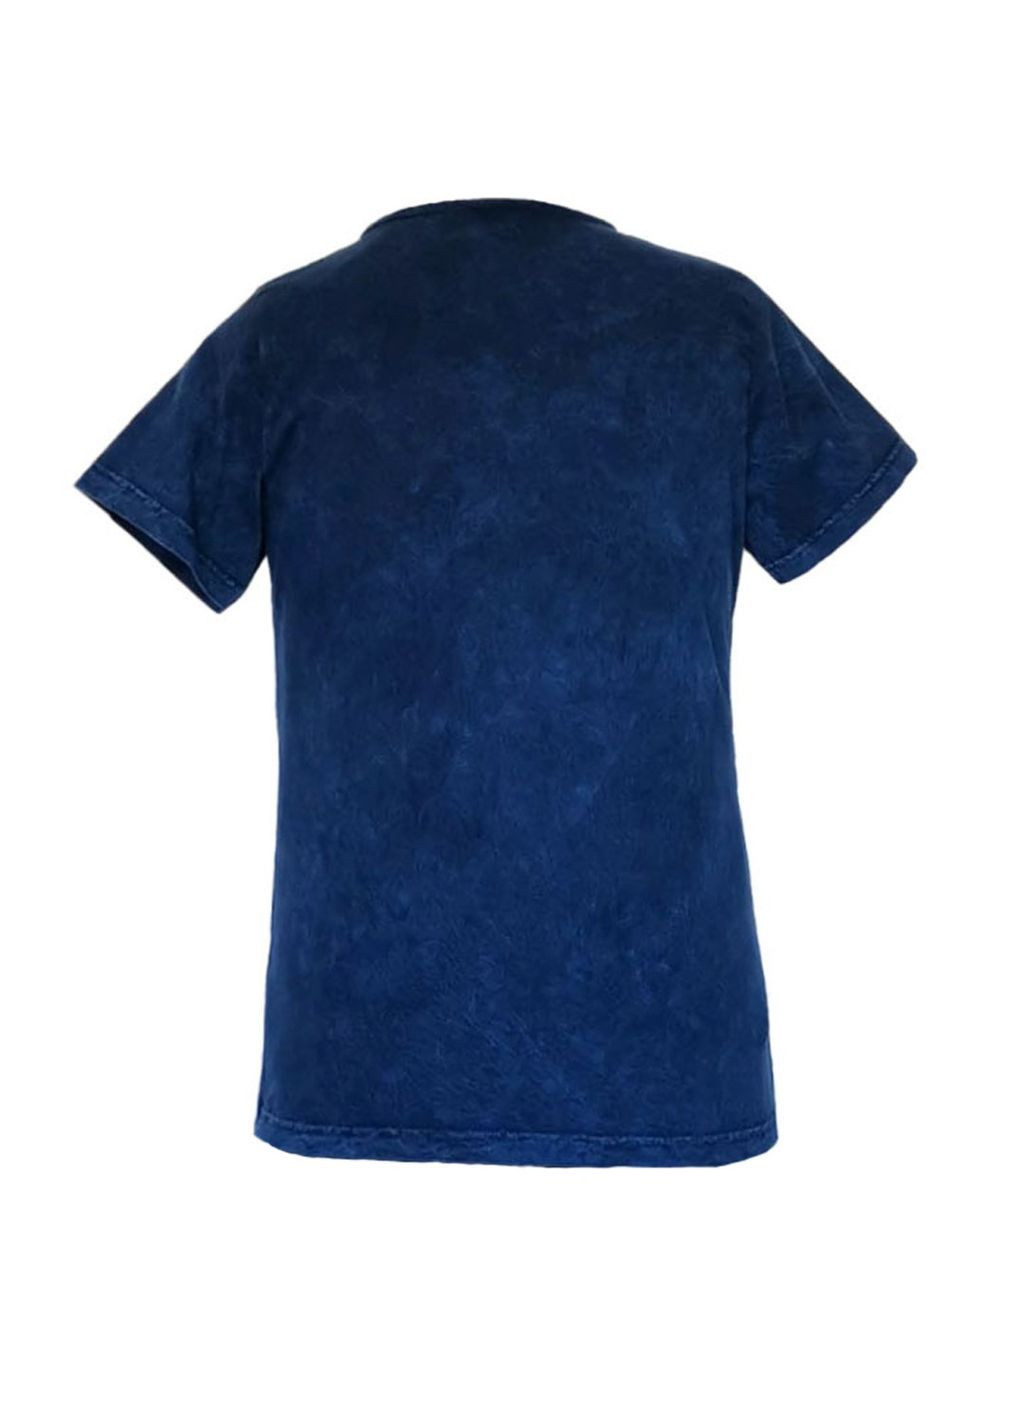 Синяя летняя футболка женская хлопковая варенка турция синий с коротким рукавом Swansea